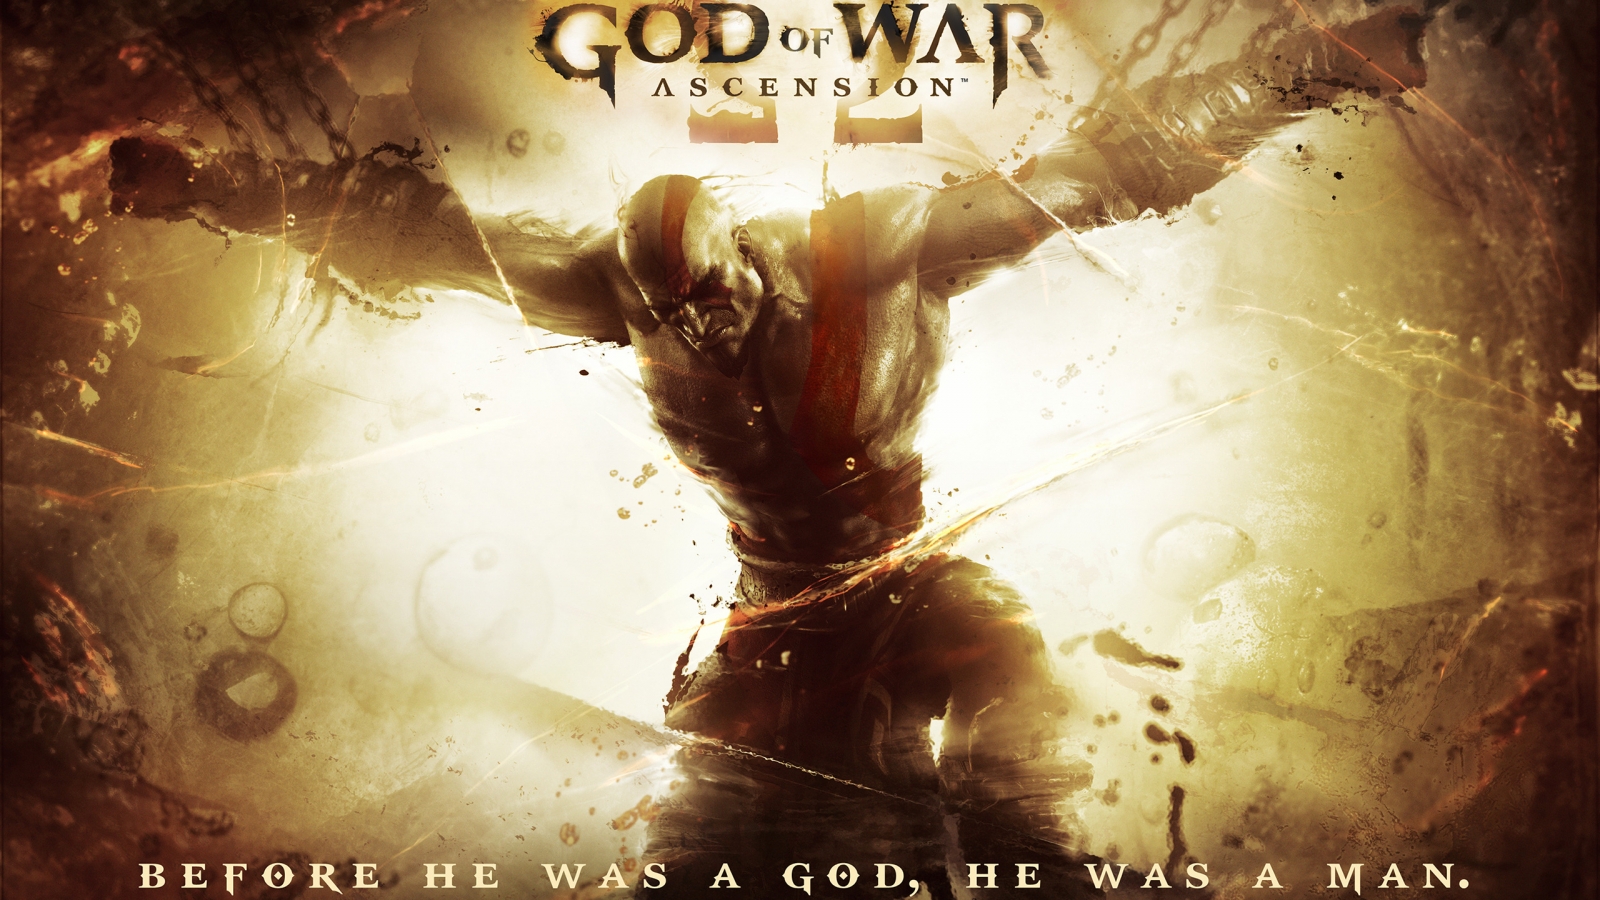 God of War Ascension 2013 for 1600 x 900 HDTV resolution